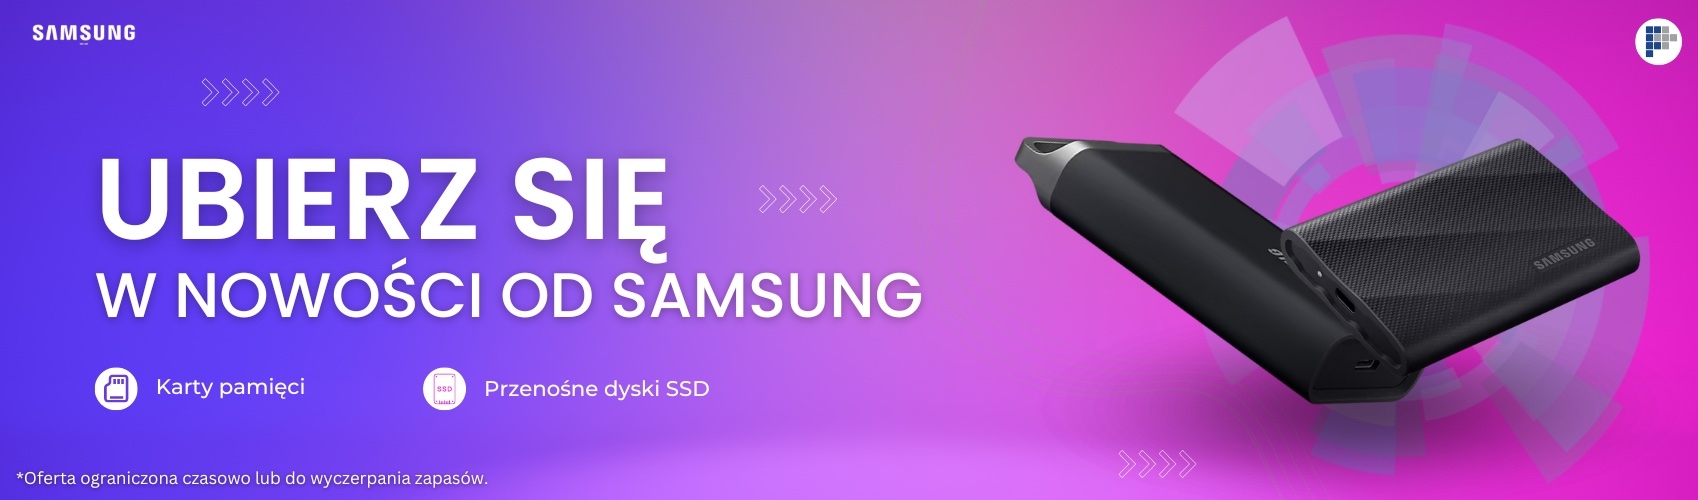 Samsung|Ubierz się w nowości